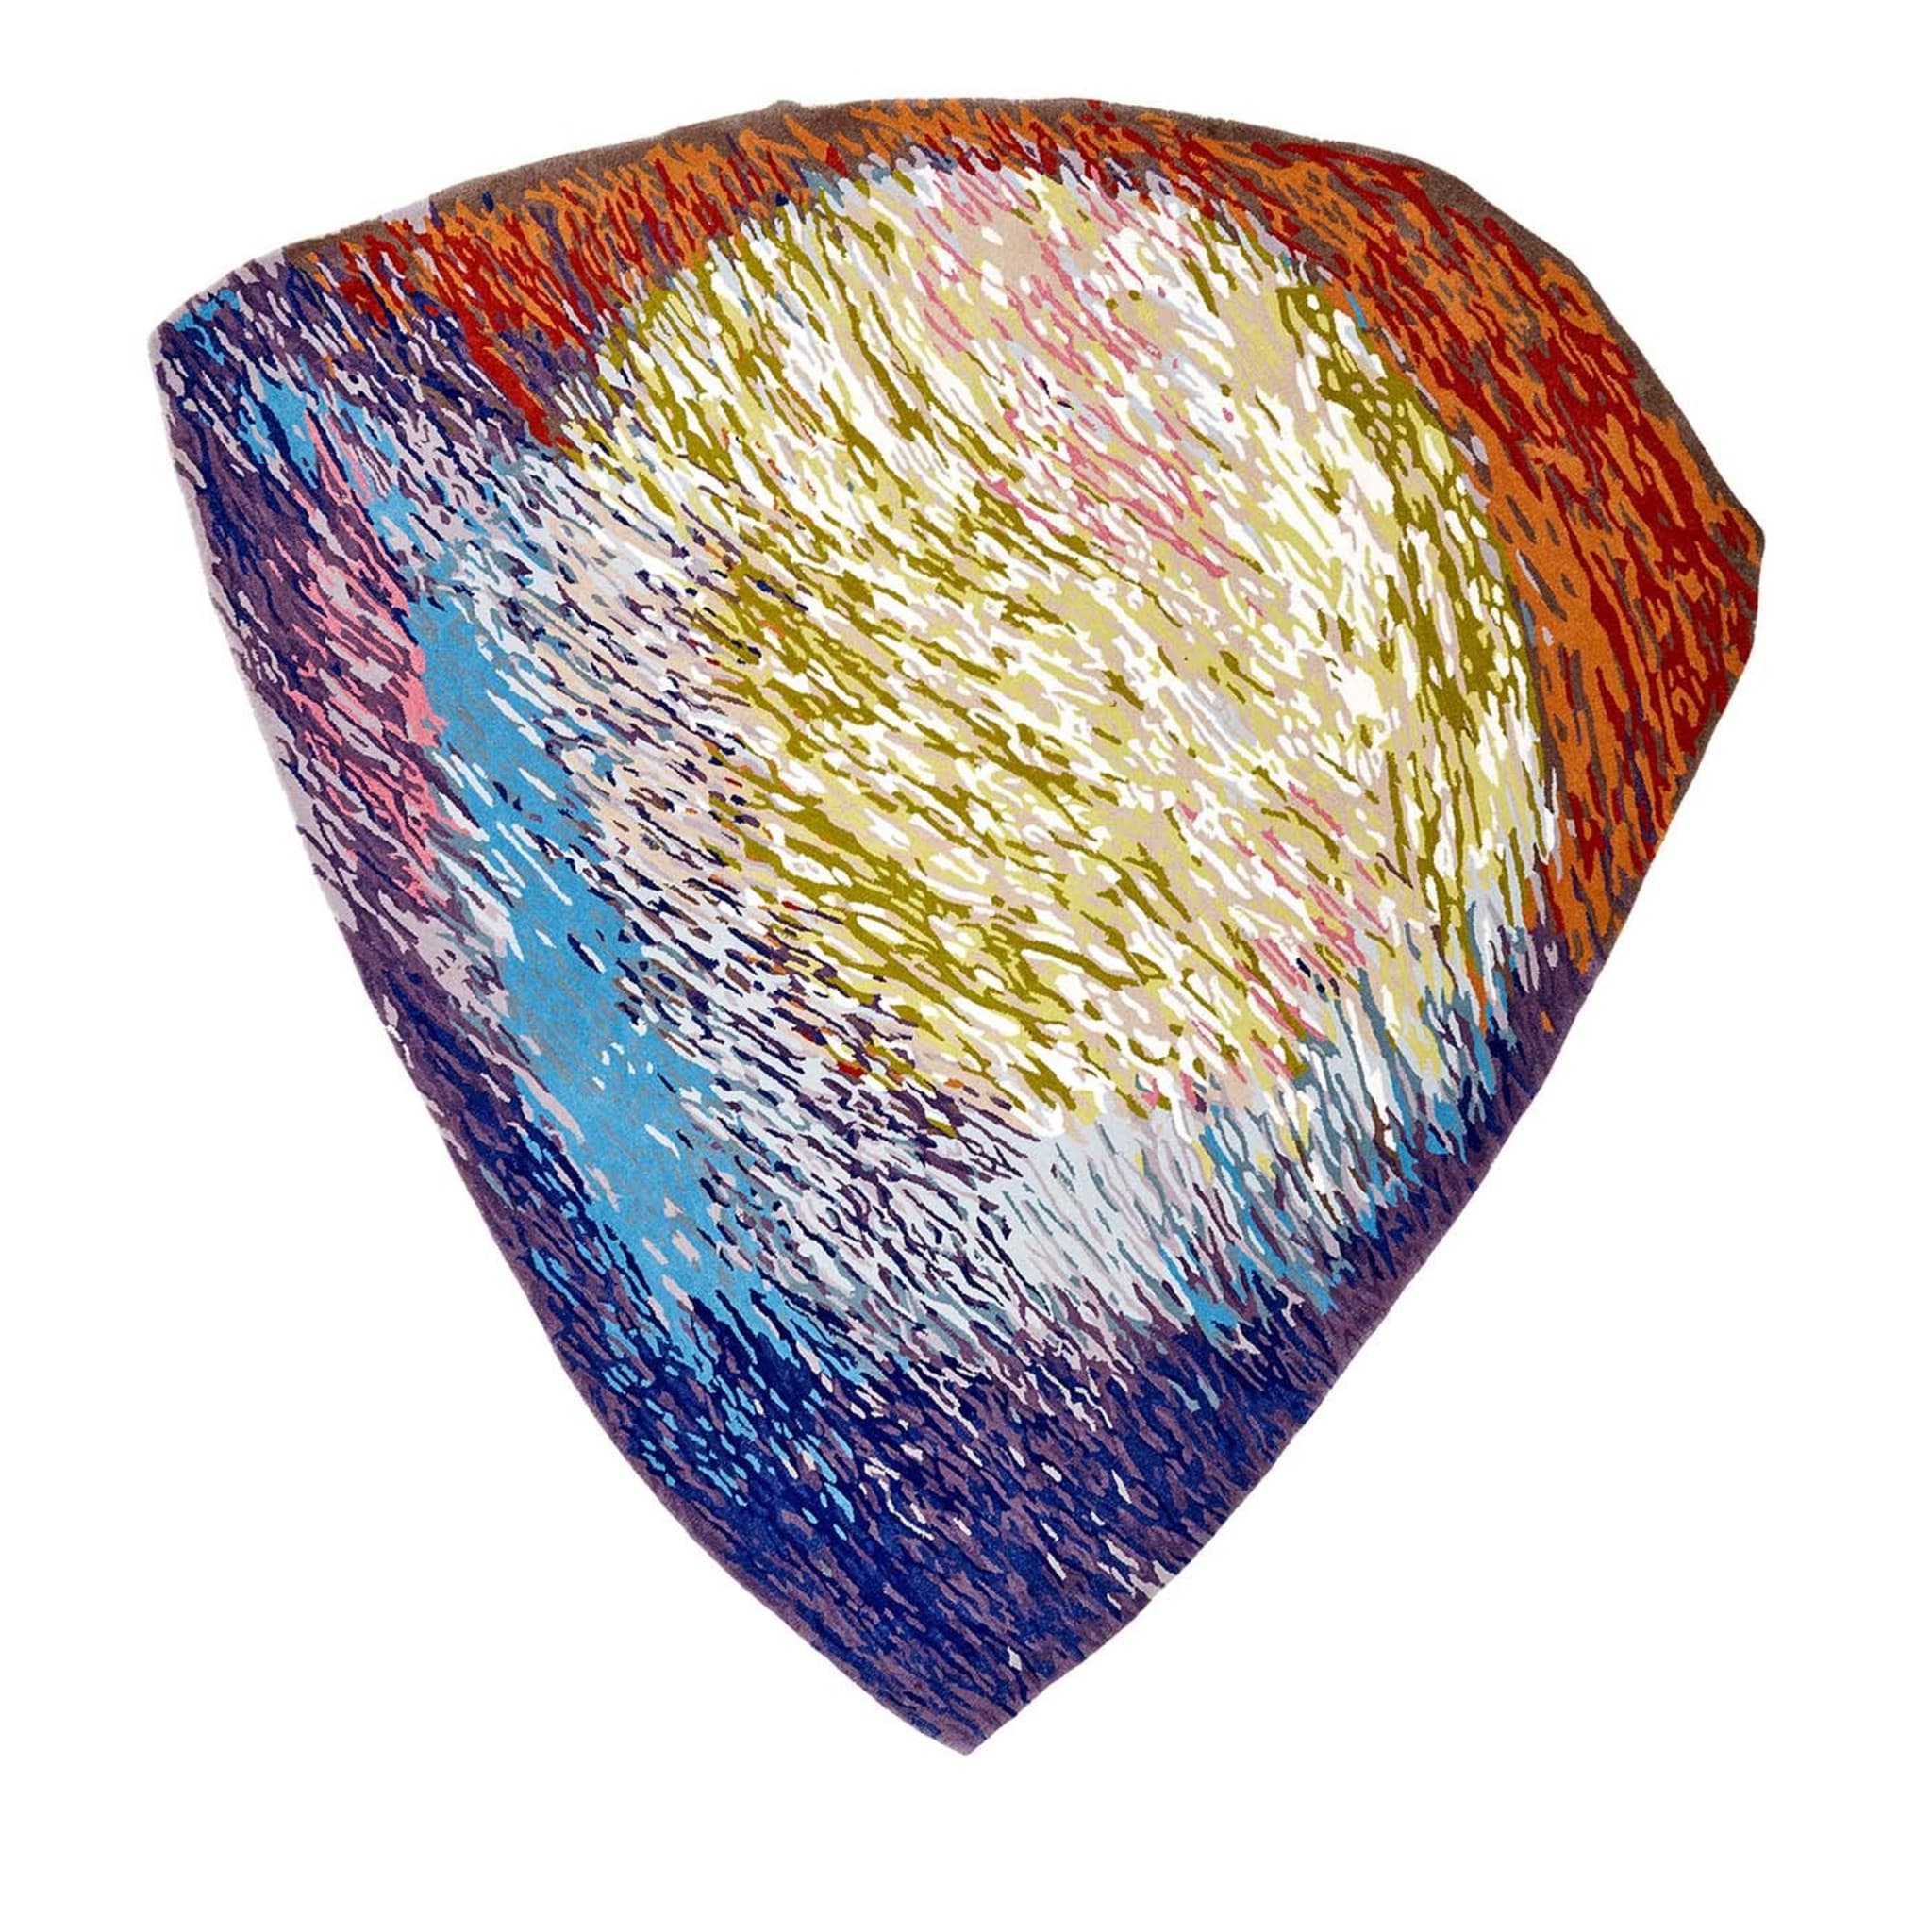 Tappeto Spectrum Wool di Clémentine Chambon - Edizione limitata - Vista principale